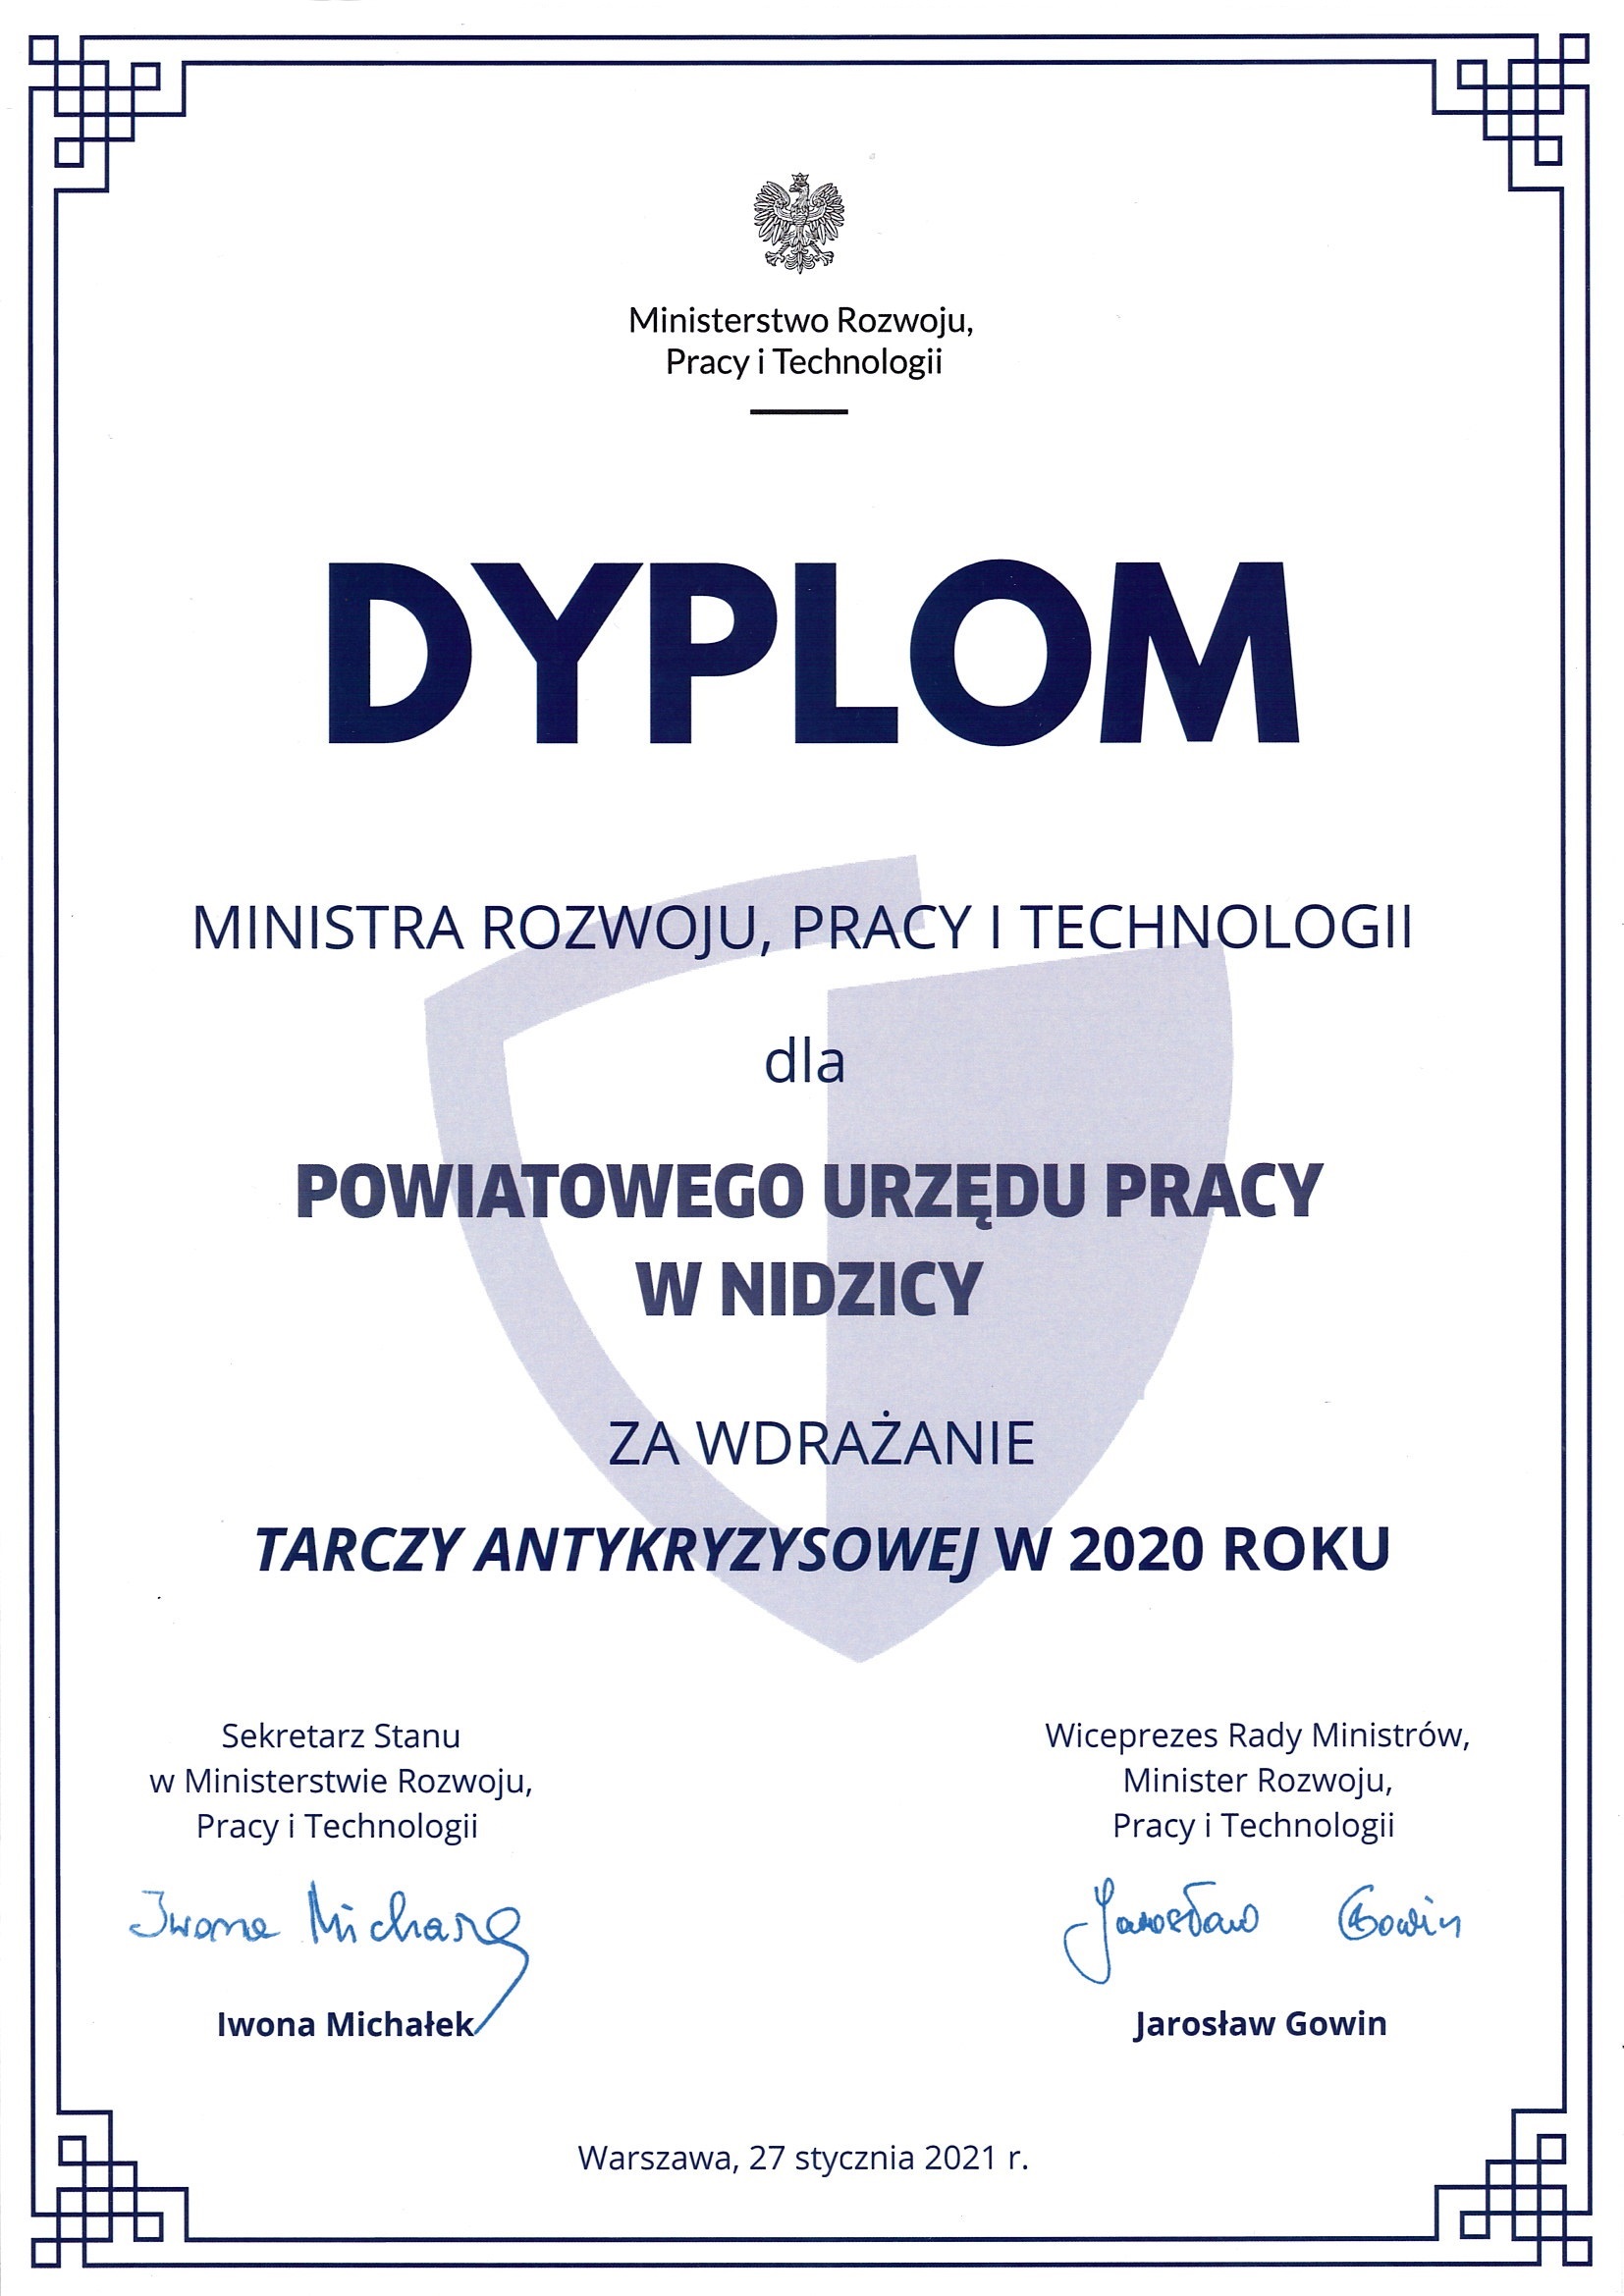 Dyplom Ministra Rozwoju, Pracy i Technologii